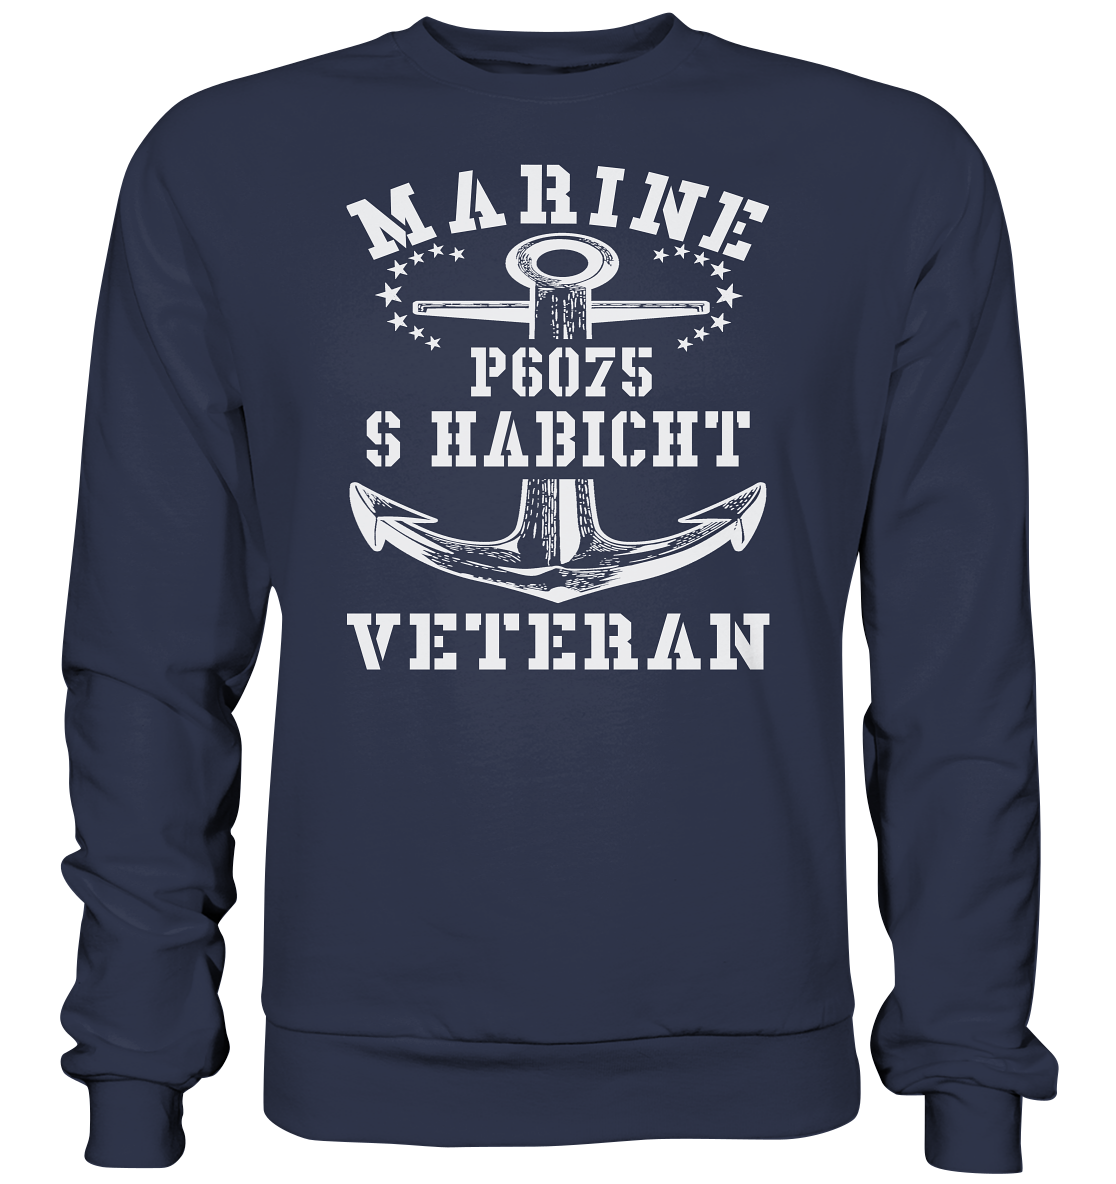 P6075 S HABICHT Marine Veteran - Premium Sweatshirt